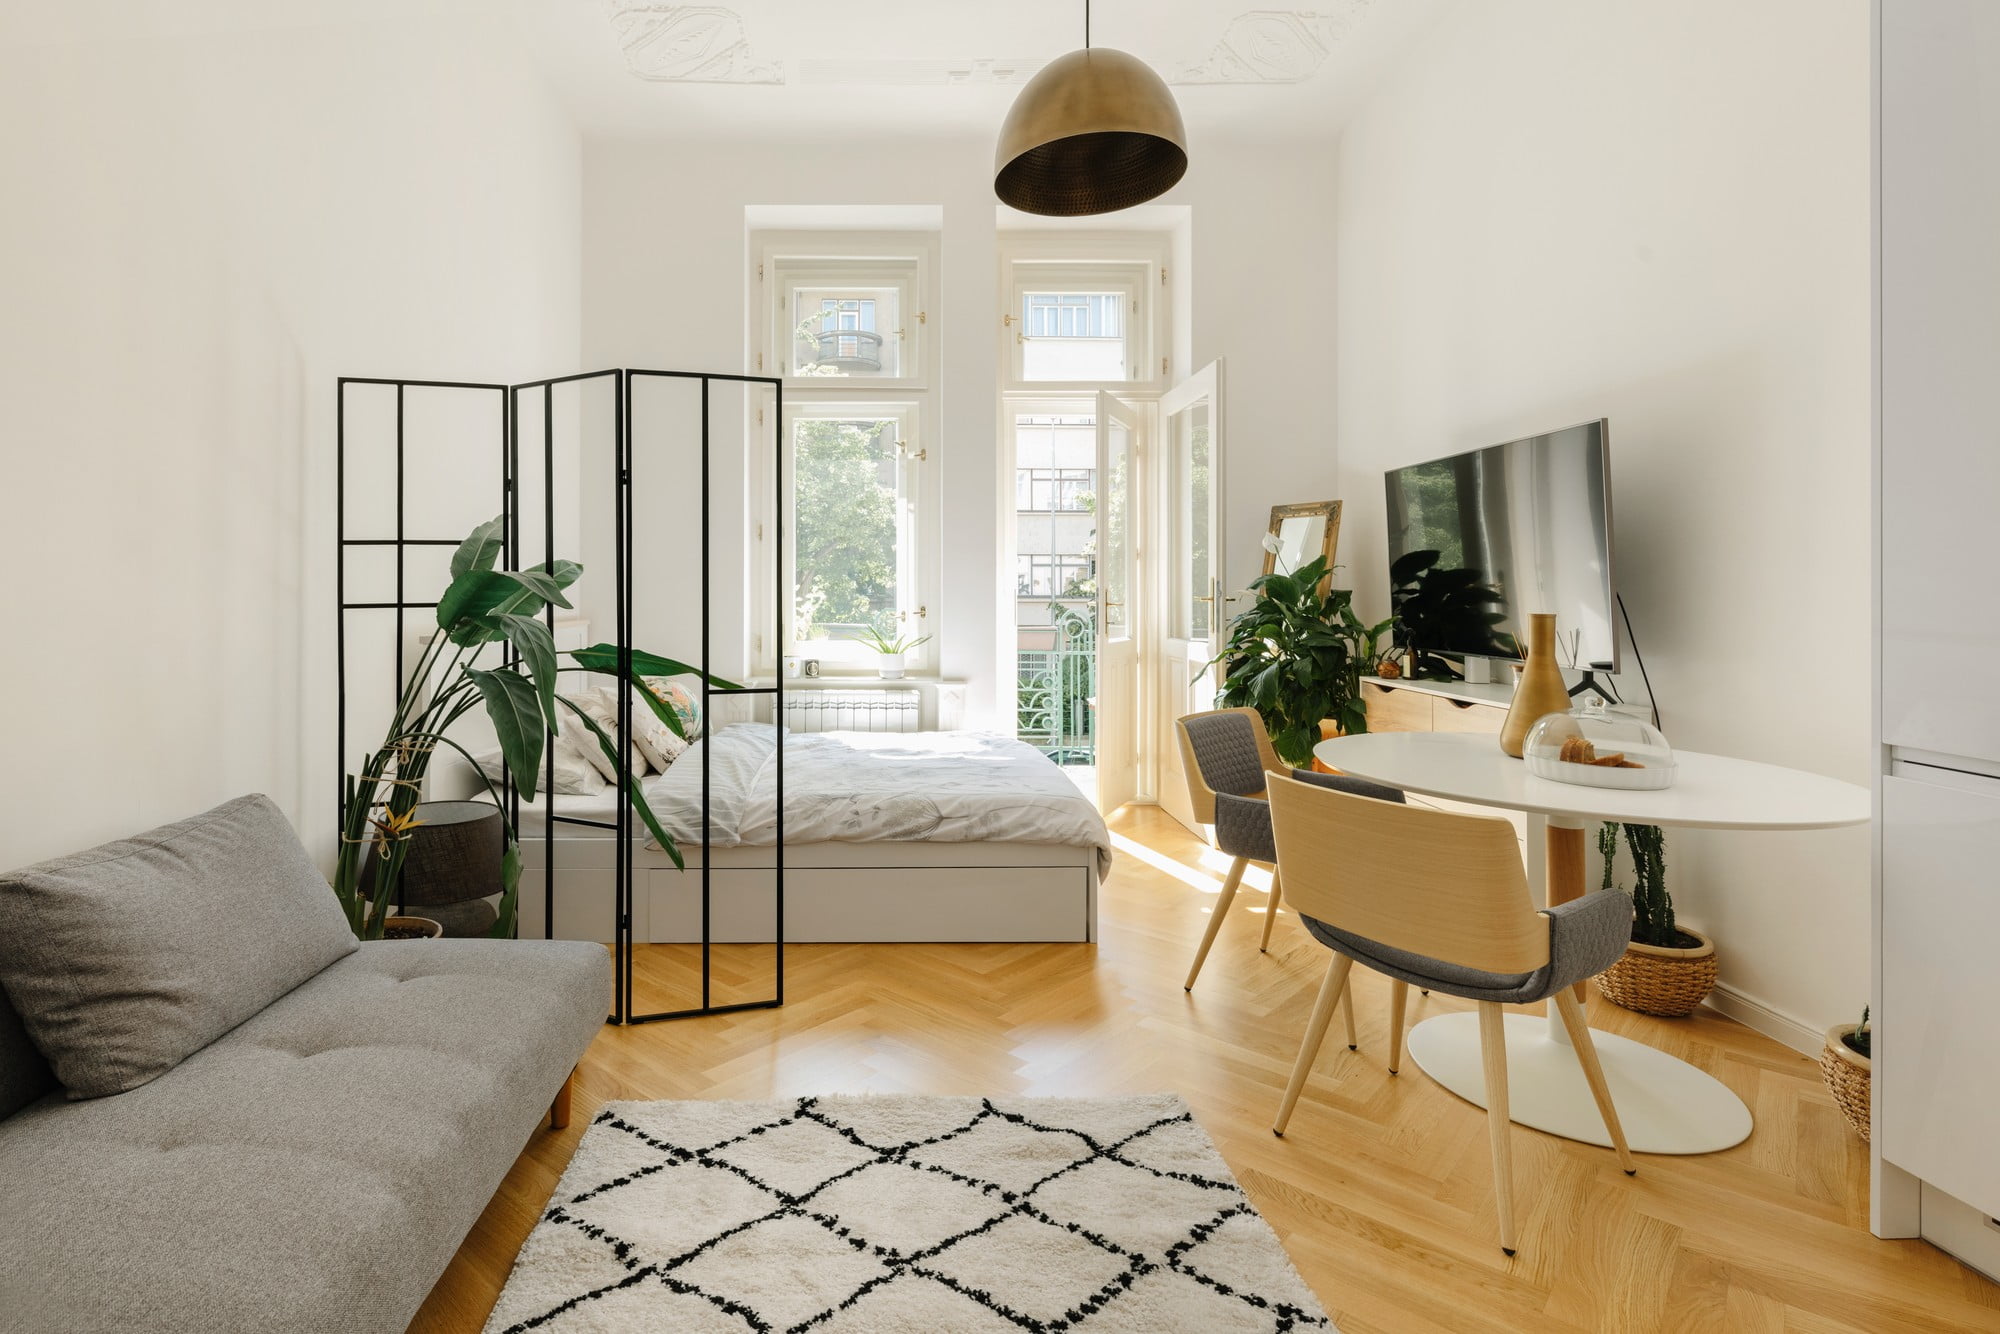 Heledate ja neutraalsete värvide kasutamine seintel ja mööblis suurendab ühetoalist korterit visuaalselt.